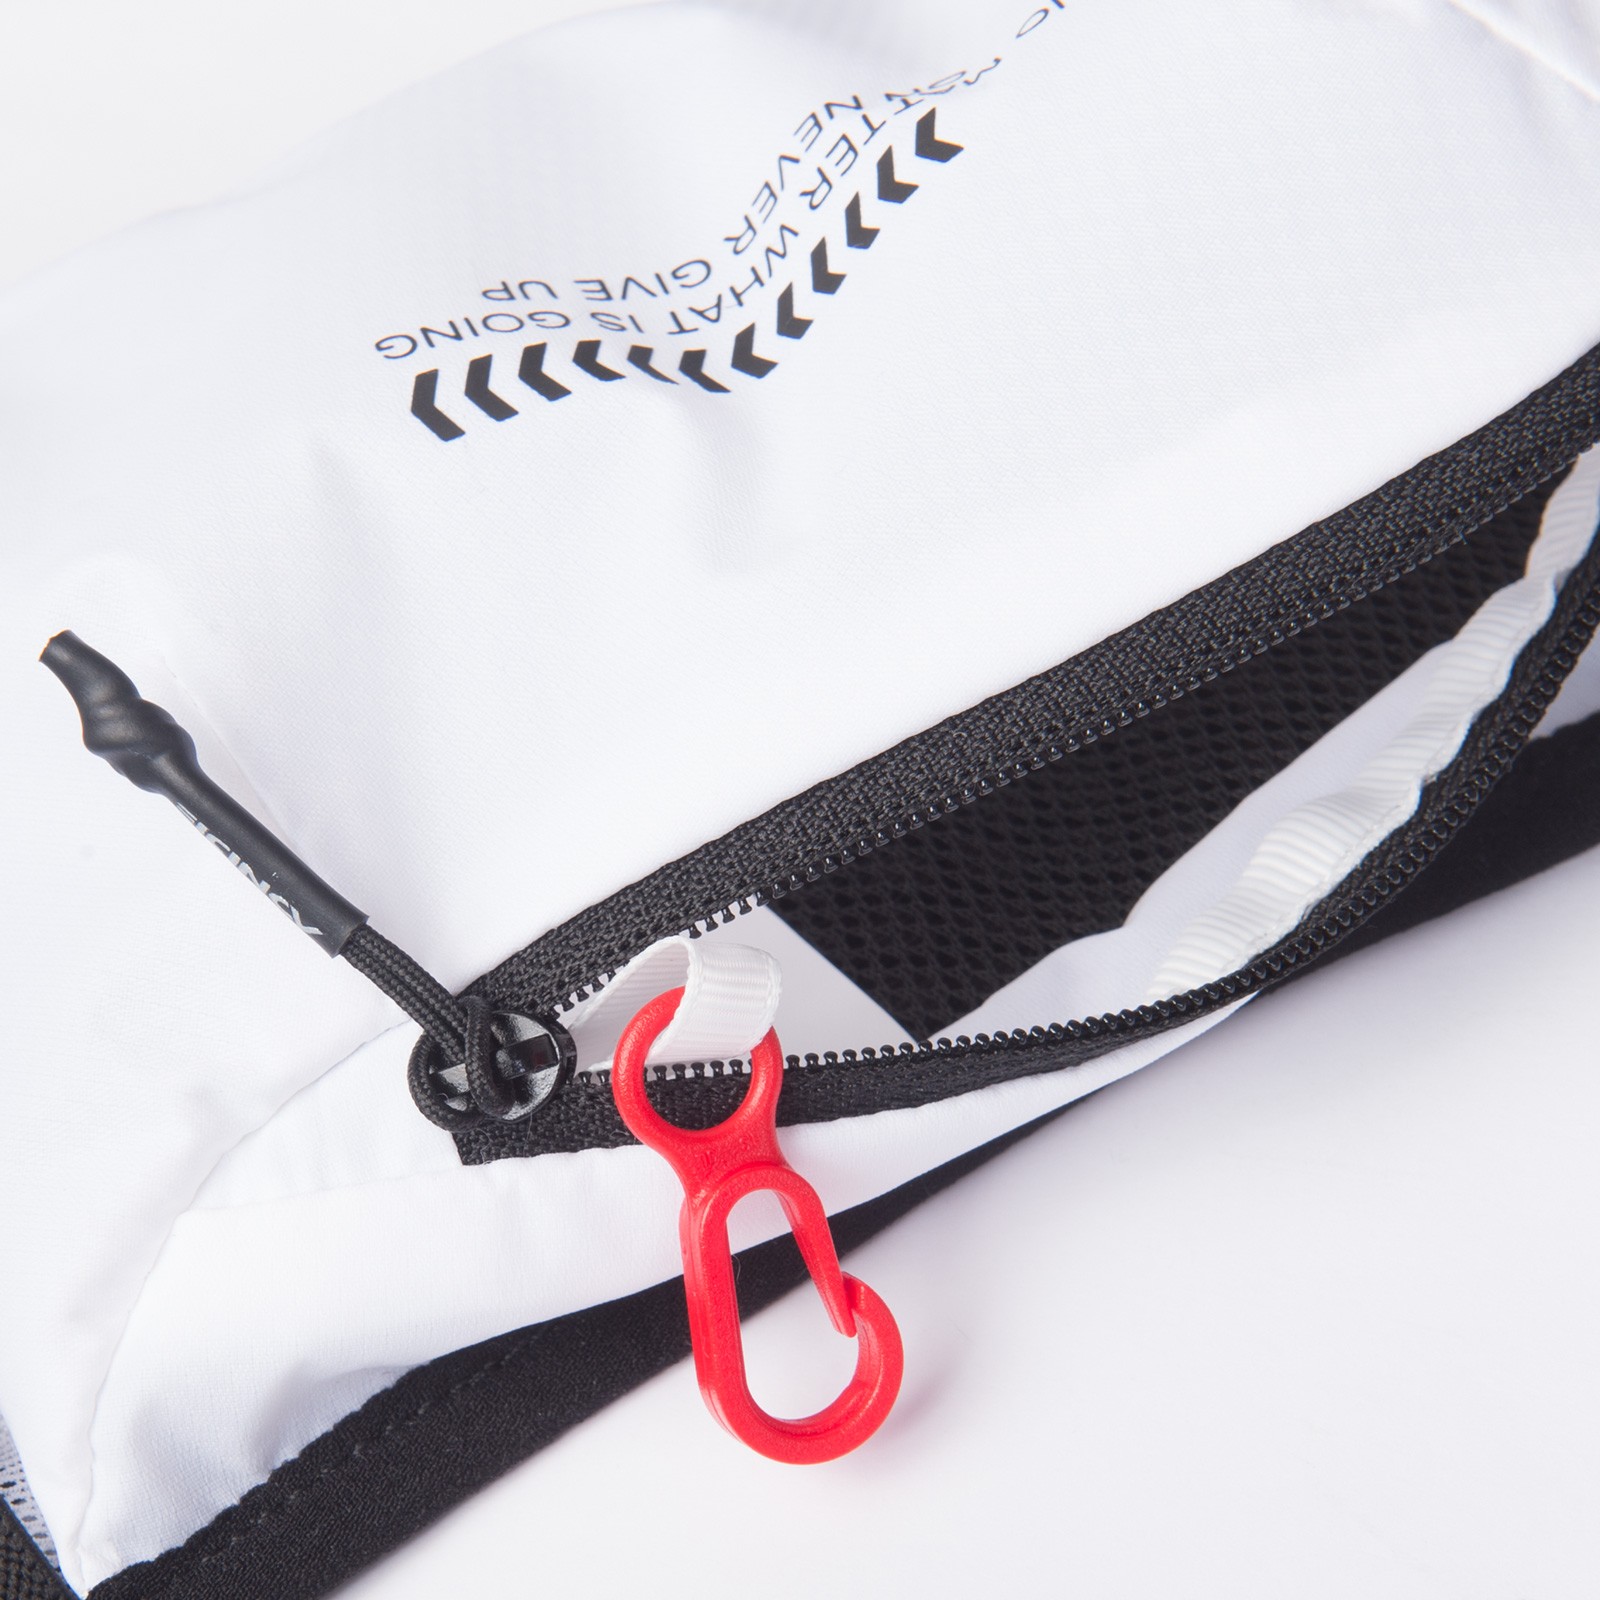 Aonijie w8113 OEM bolsos deportivos en blanco y negro corren al aire libre bolsos en forma de abanico con bolsillos de Maratón de gran capacidad bolsos de senderismo